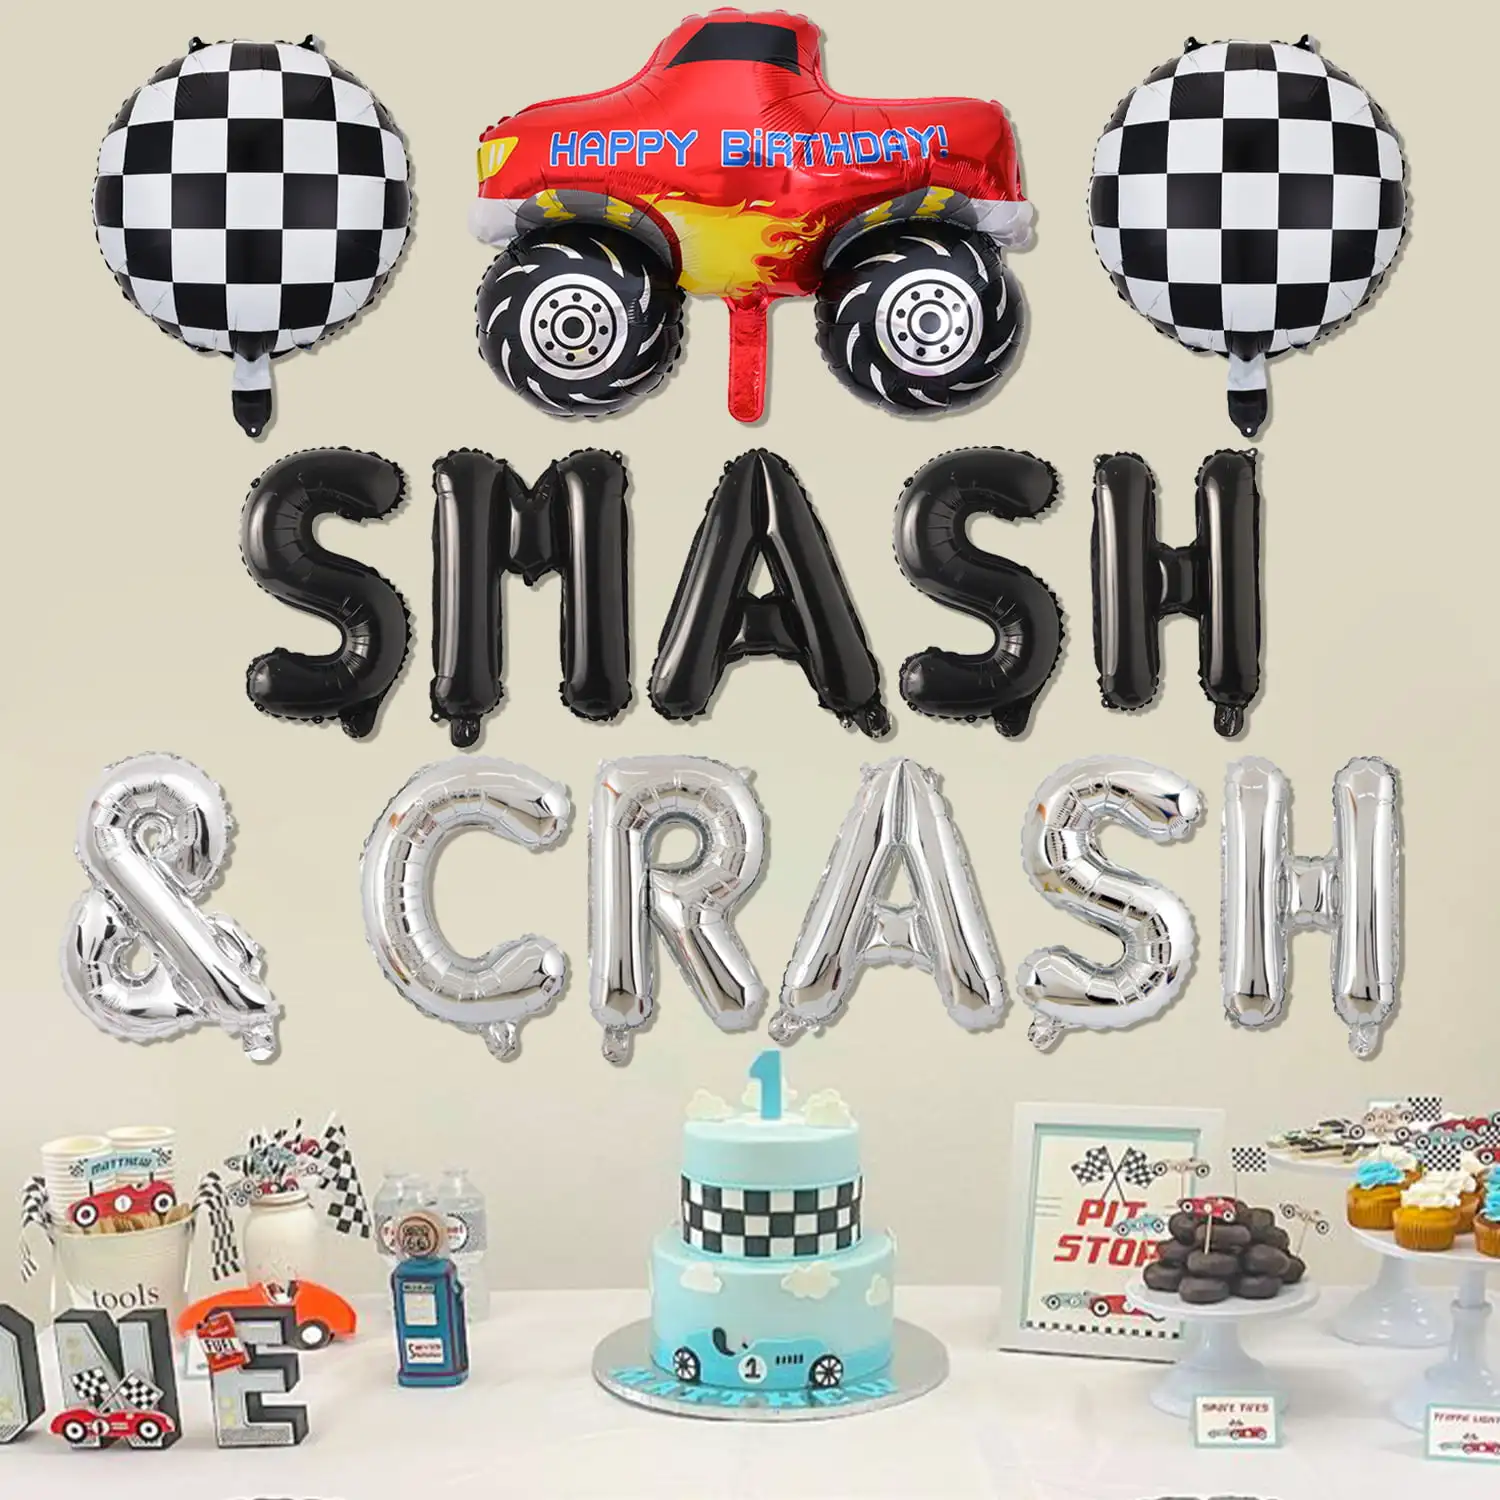 Украшения для дня рождения гоночных автомобилей, воздушные шары с надписями SMASH & CRASH и винтажные воздушные шары из фольги в шахматном порядке для мальчиков 3